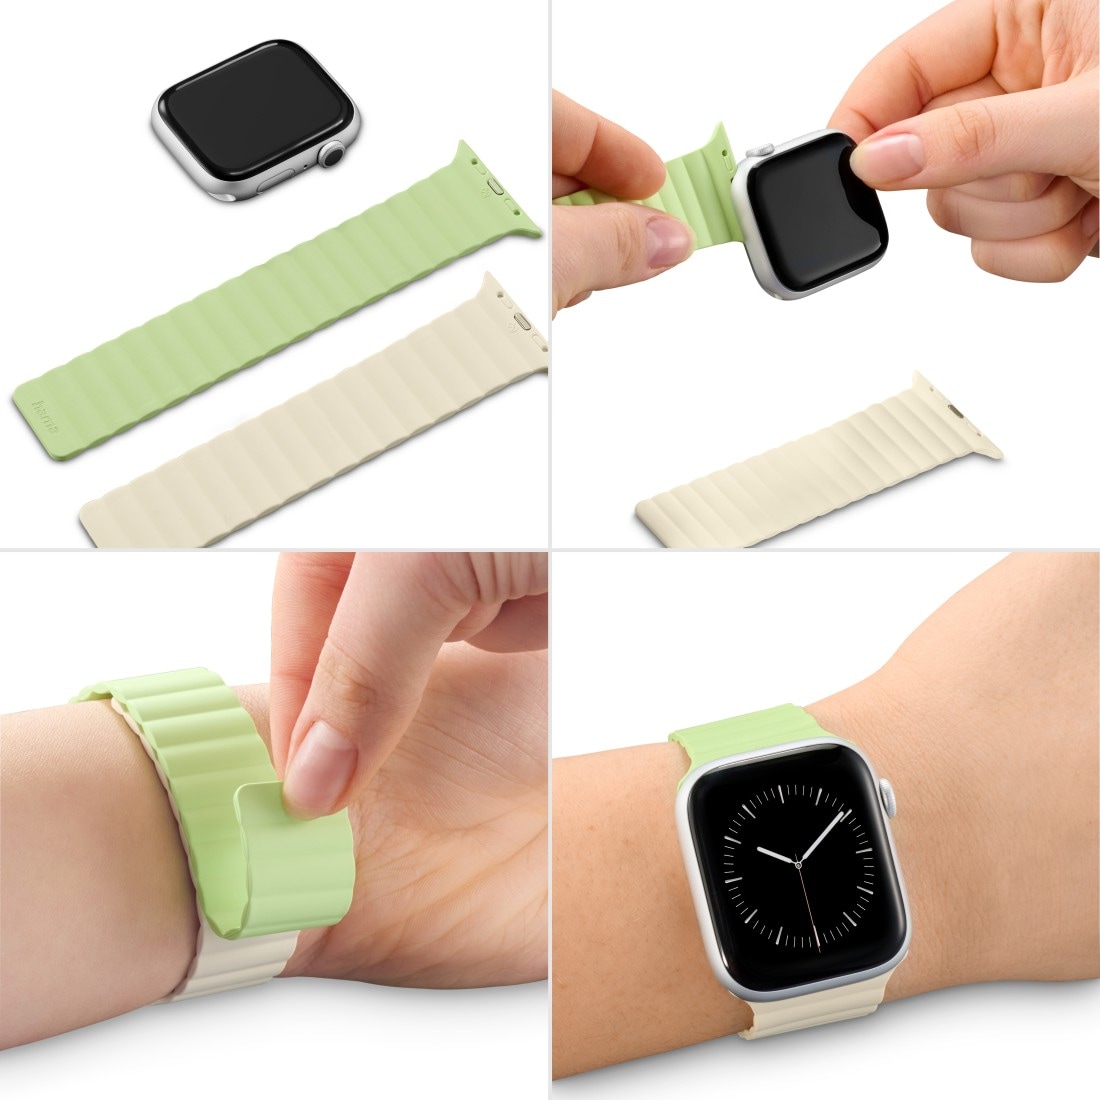 Hama Wechselarmband »Apple Watch Armband mit Magnetverschluss, für Apple Watch 38/40/41 mm«, Einheitsgröße, nicht klebrig, Silikon-Look